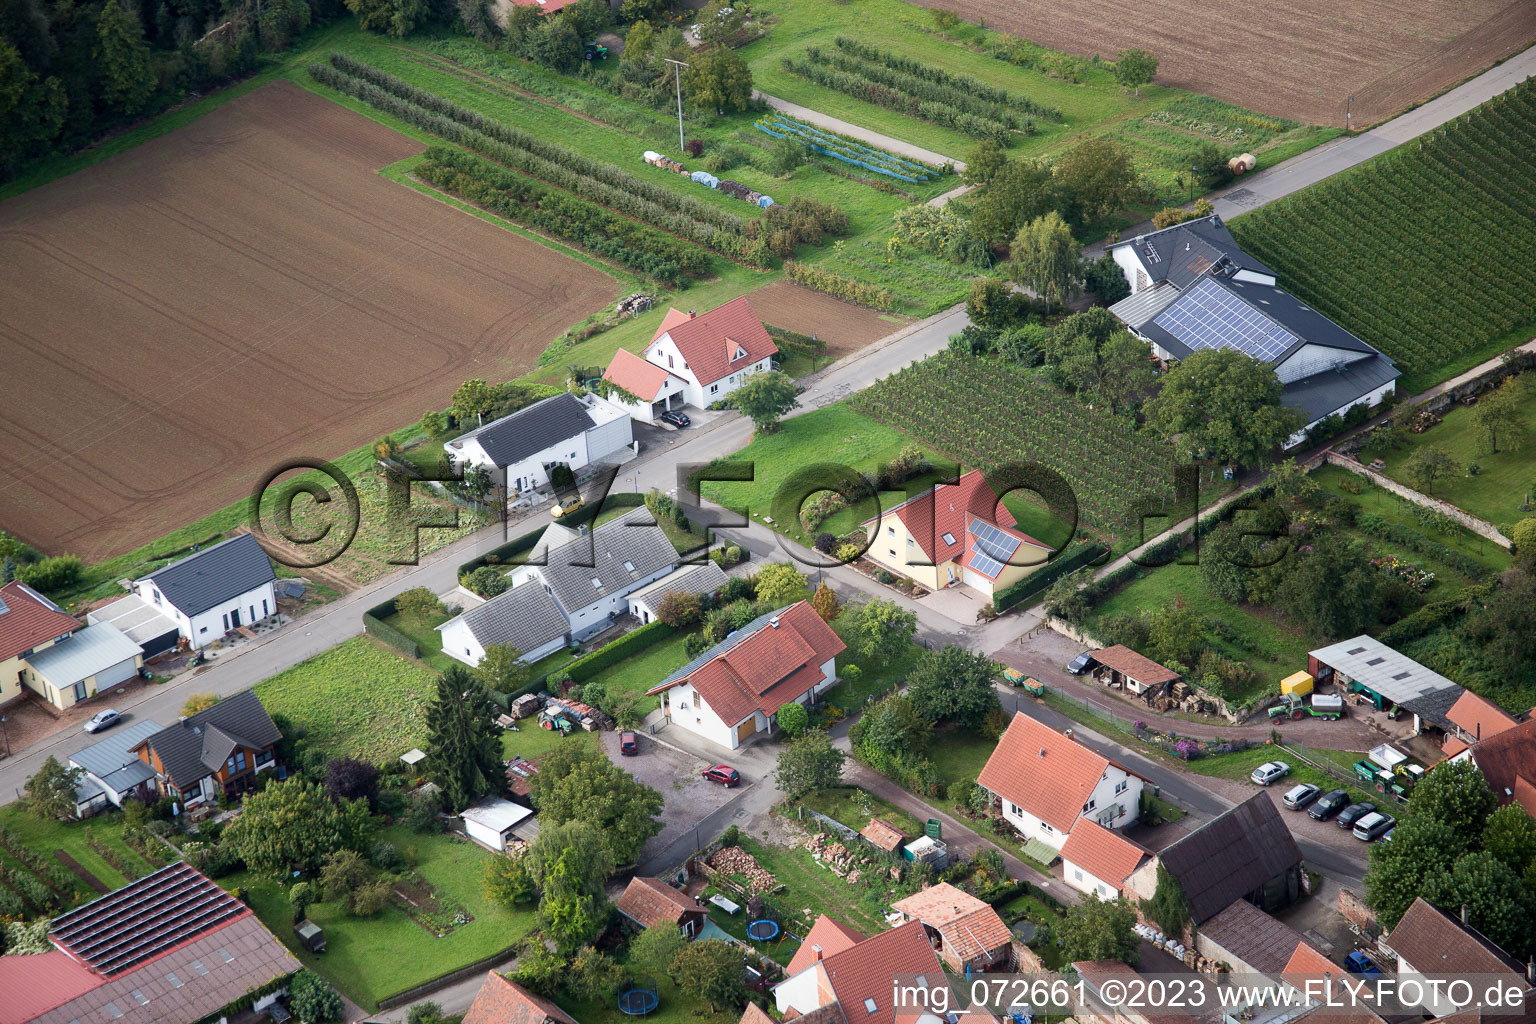 Oblique view of At the parish garden in the district Heuchelheim in Heuchelheim-Klingen in the state Rhineland-Palatinate, Germany